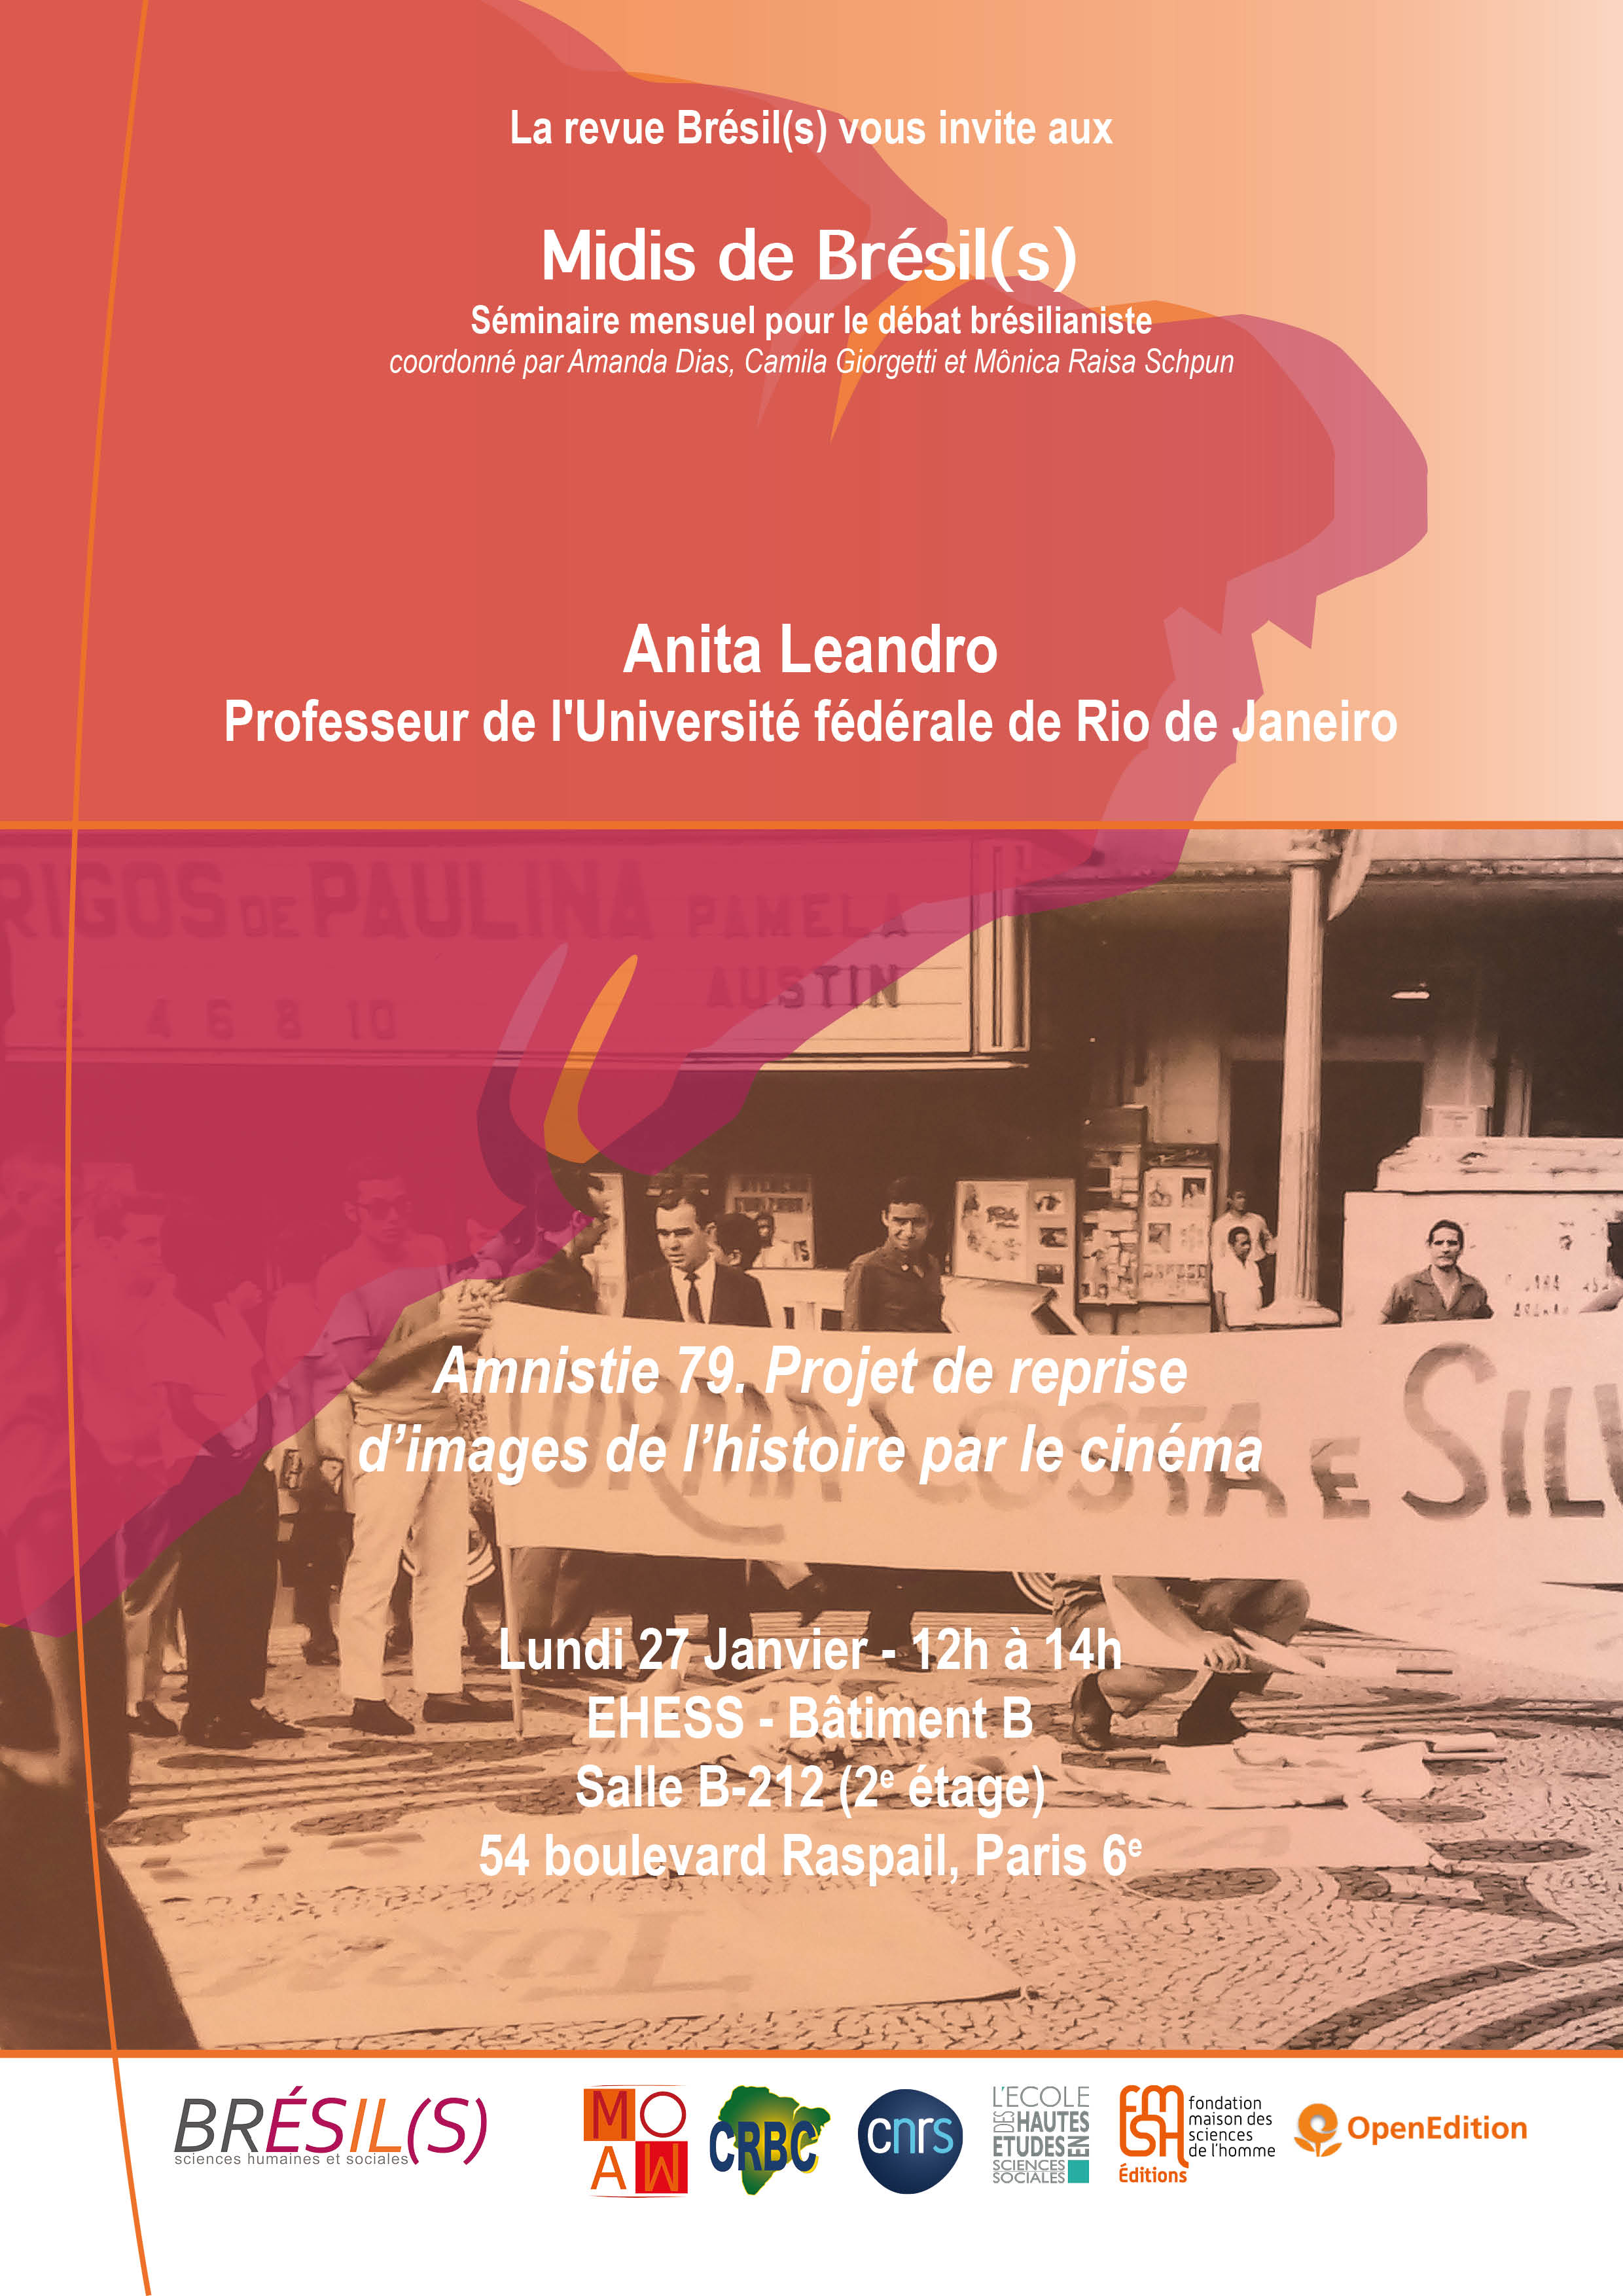 Les Midis de Brésil(s) - Anita Leandro, professeur à l'Université fédérale de Rio de Janeiro/Amnistie 79. Projet de reprise d’images de l’histoire par le cinéma